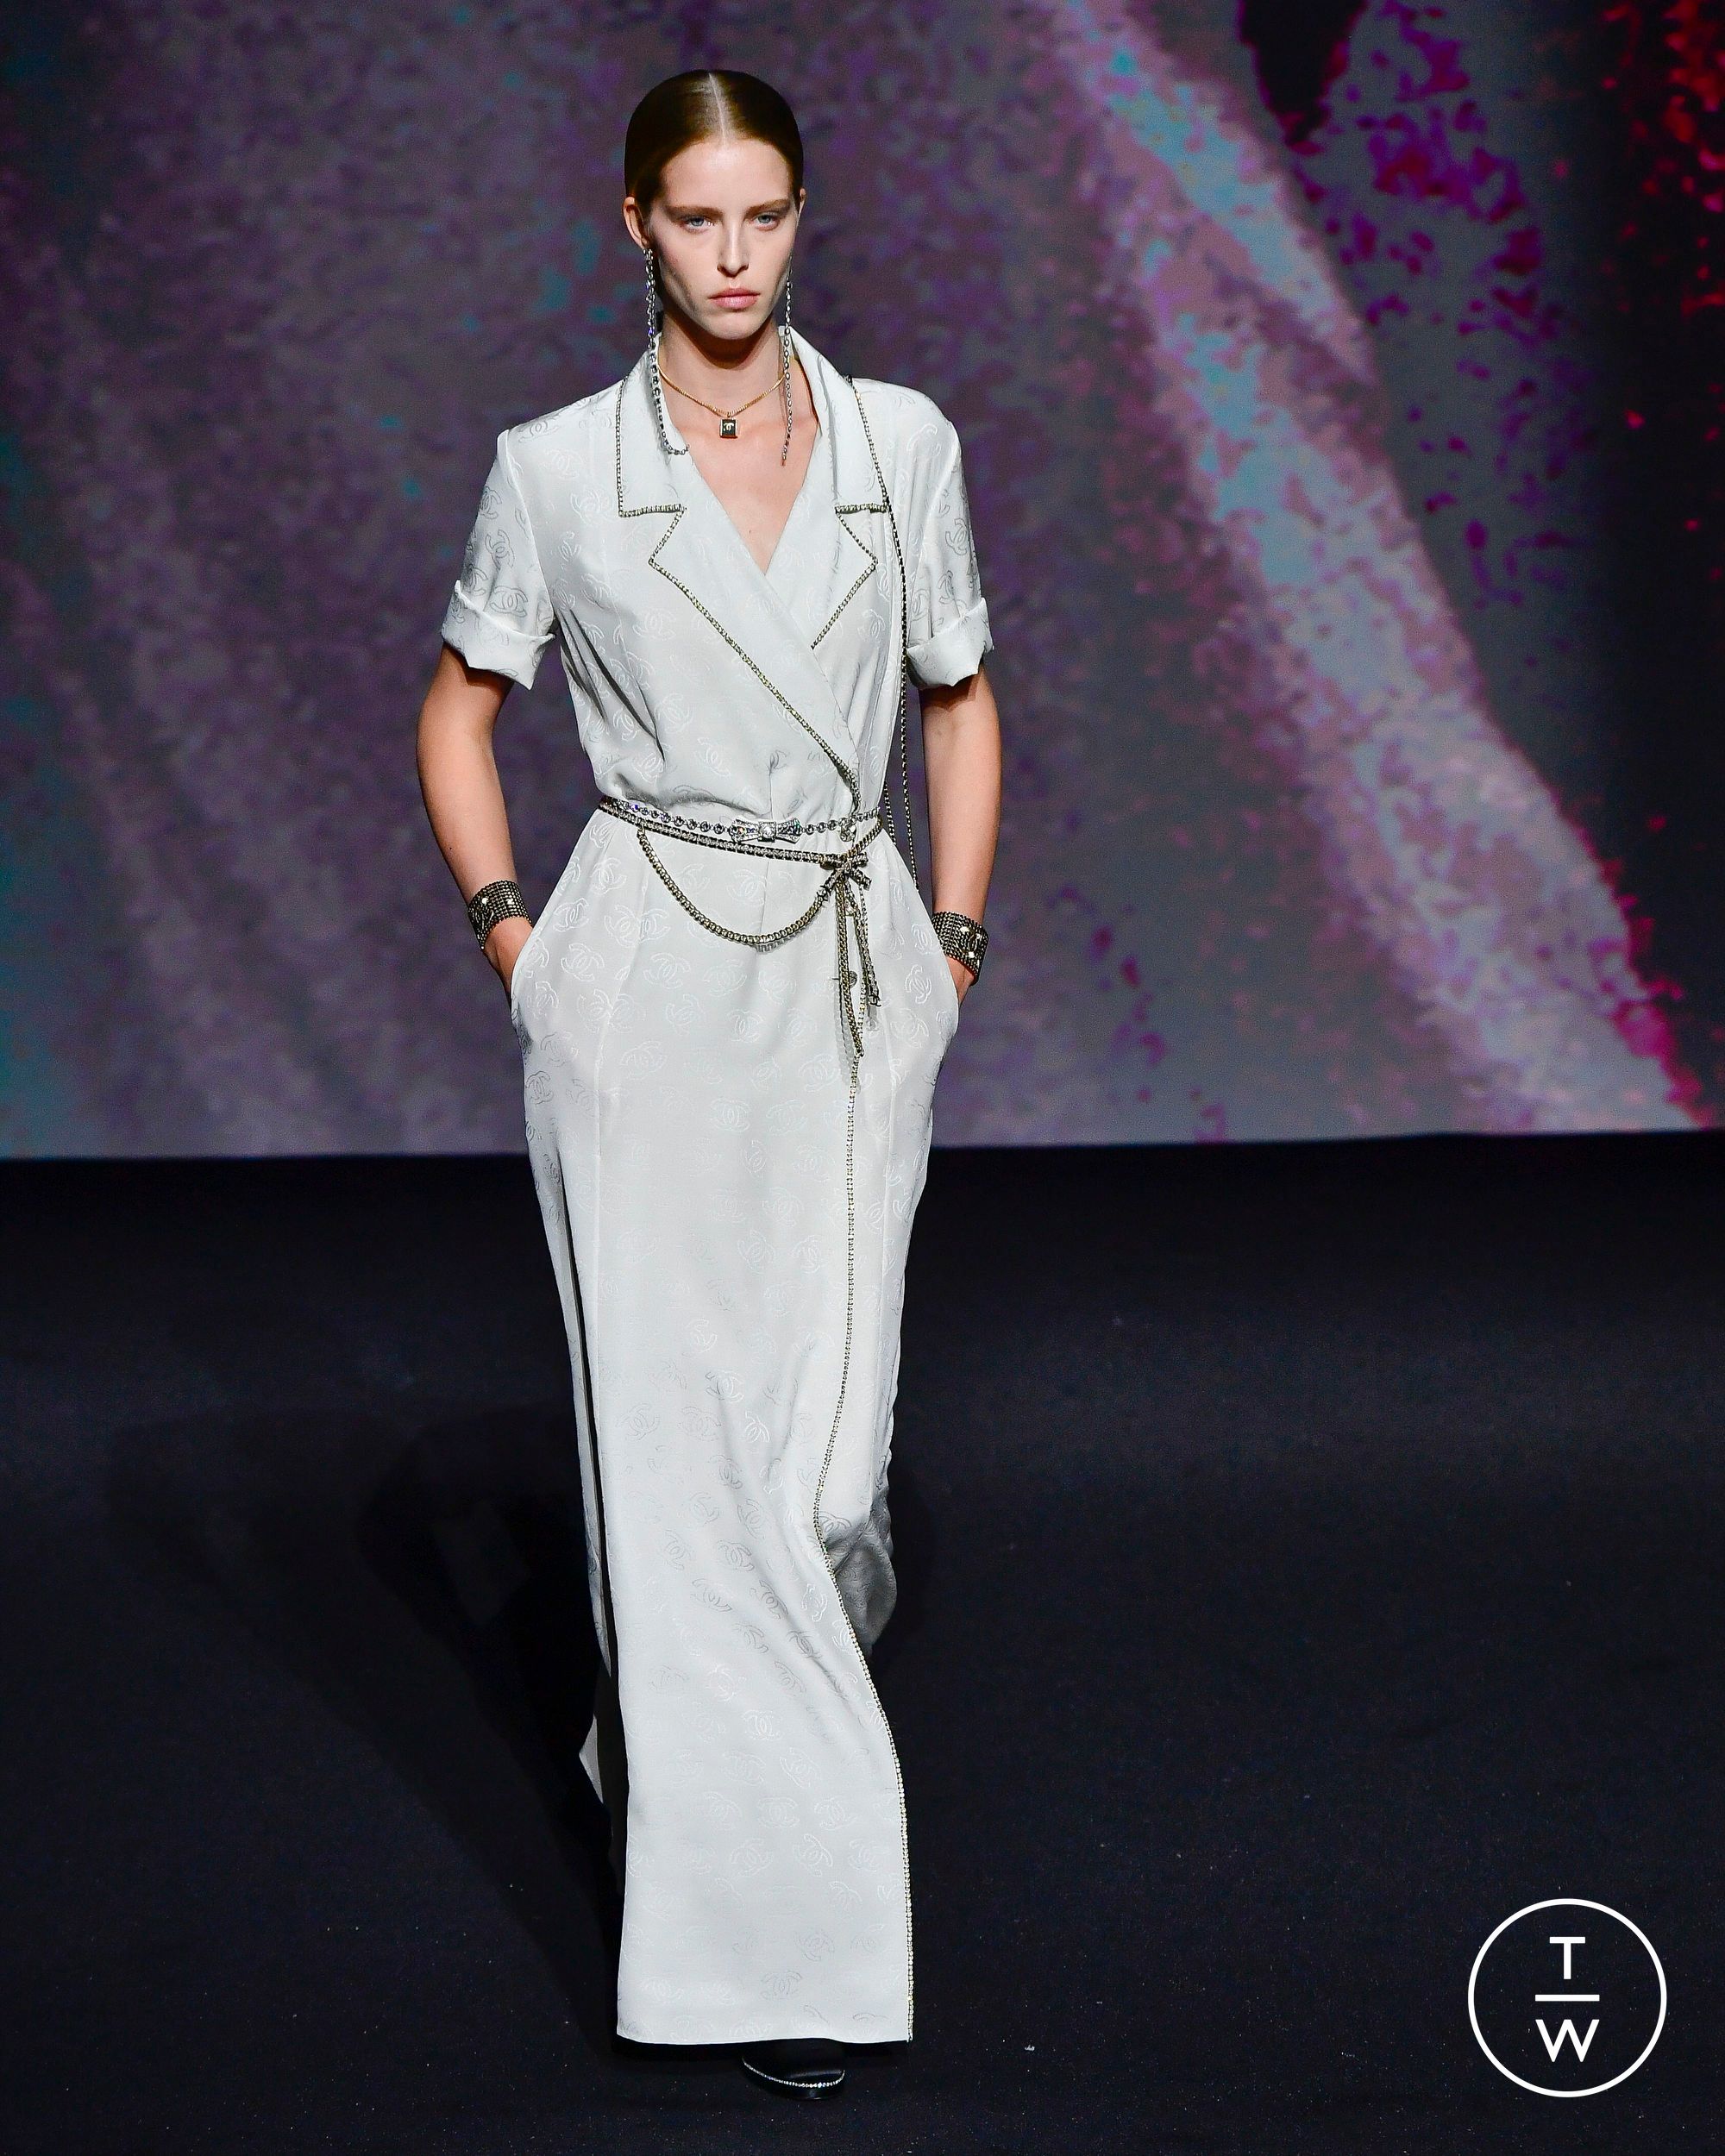 Chanel RE23 womenswear #33 - Tagwalk: The Fashion Search Engine